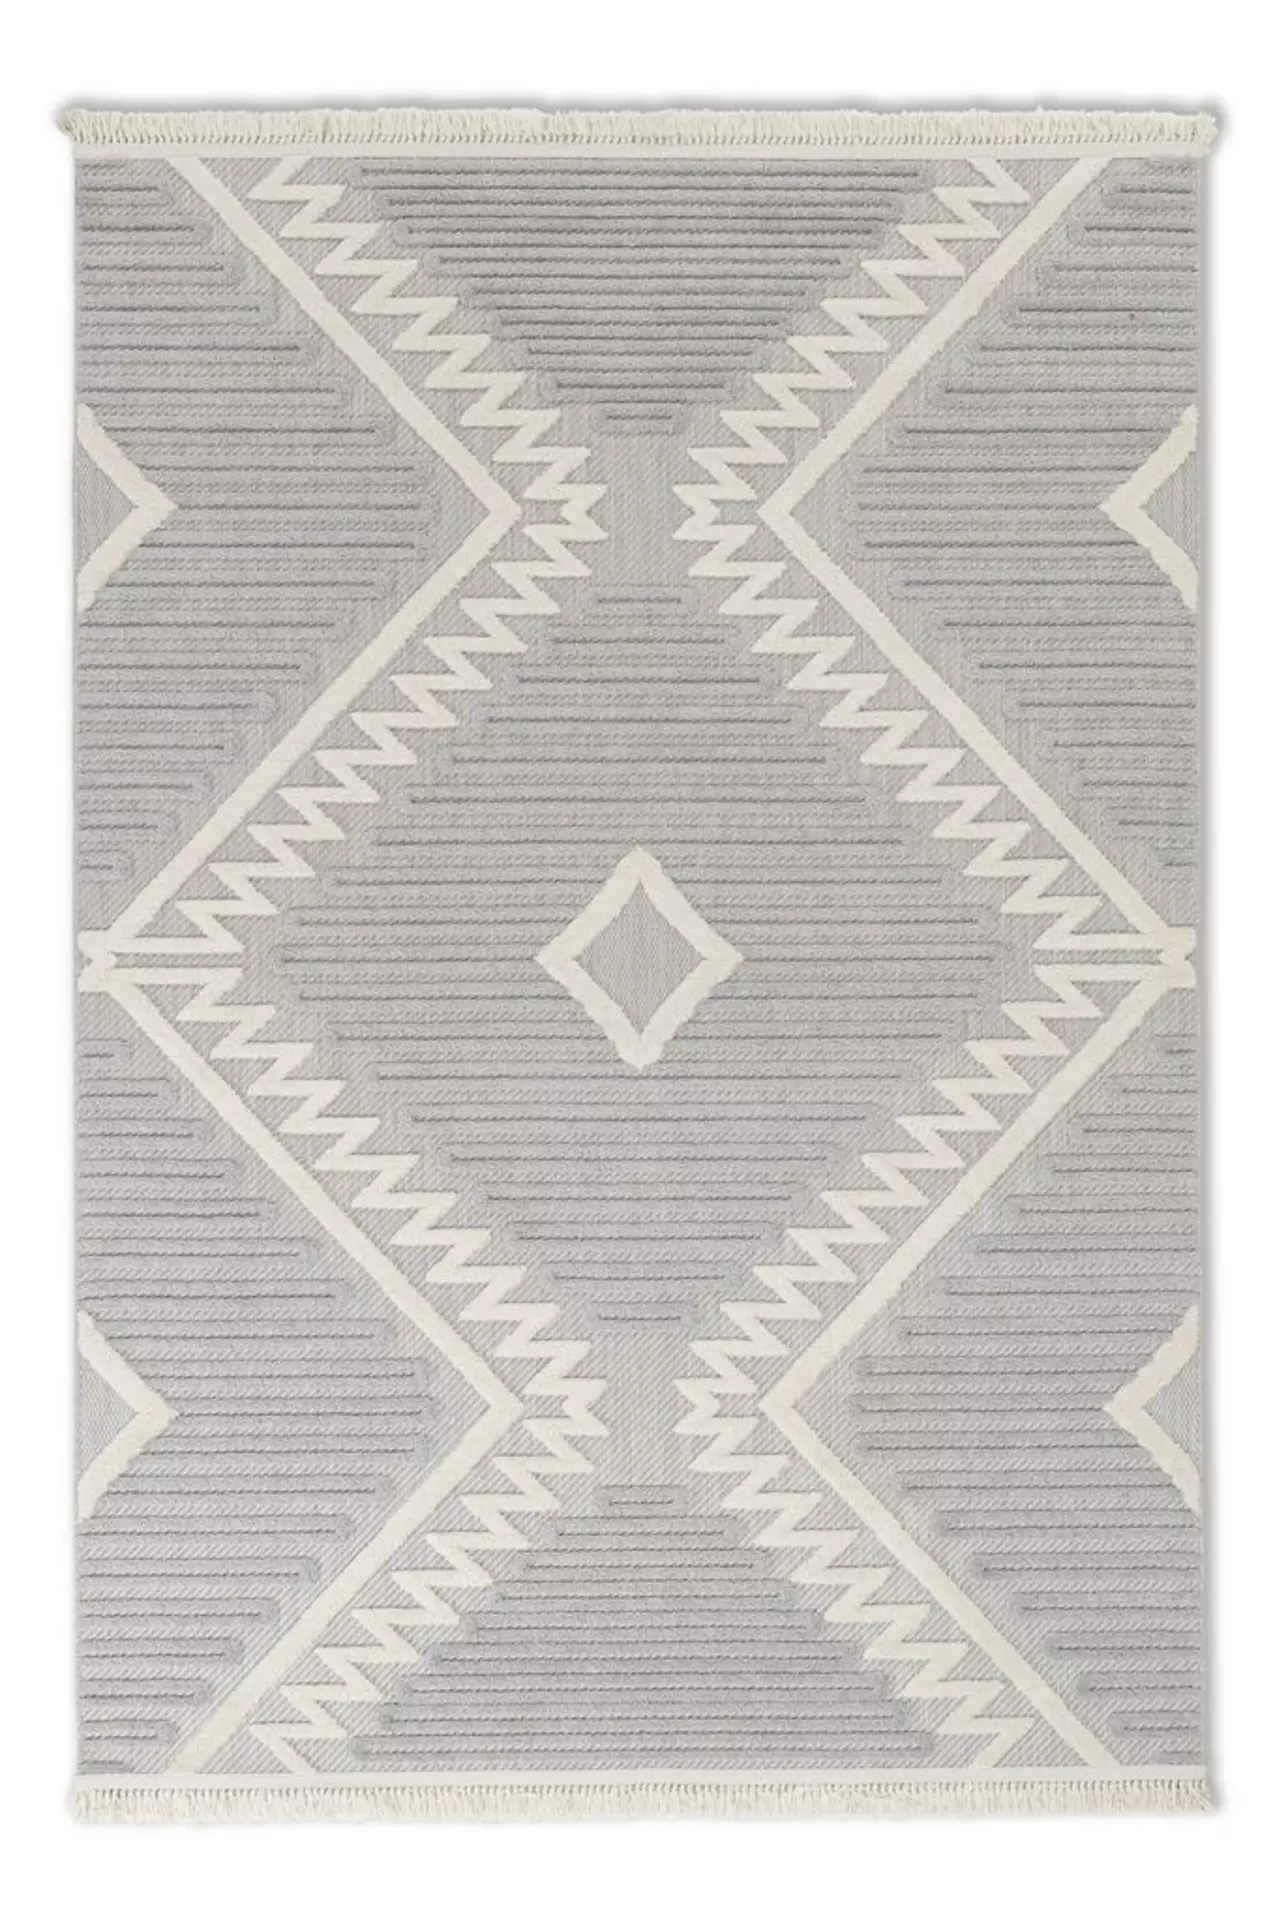 Outdoorteppich Summer SCHÖNER WOHNEN-Kollektion Textil 80 x 150 cm